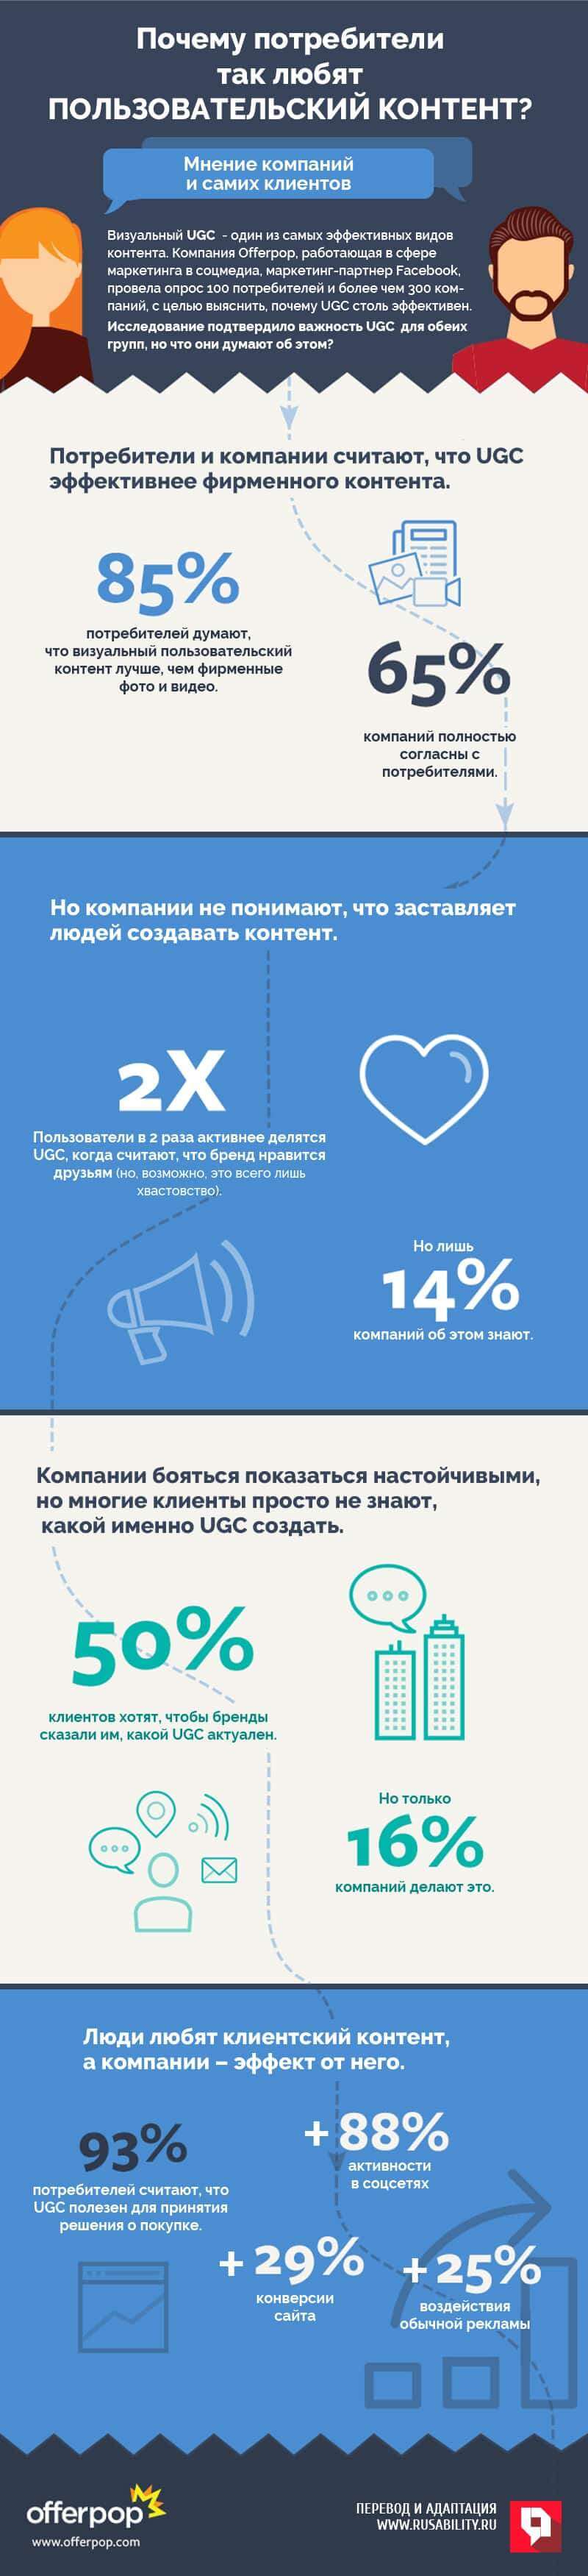 UGC, пользовательский контент, аналитика, инфографика